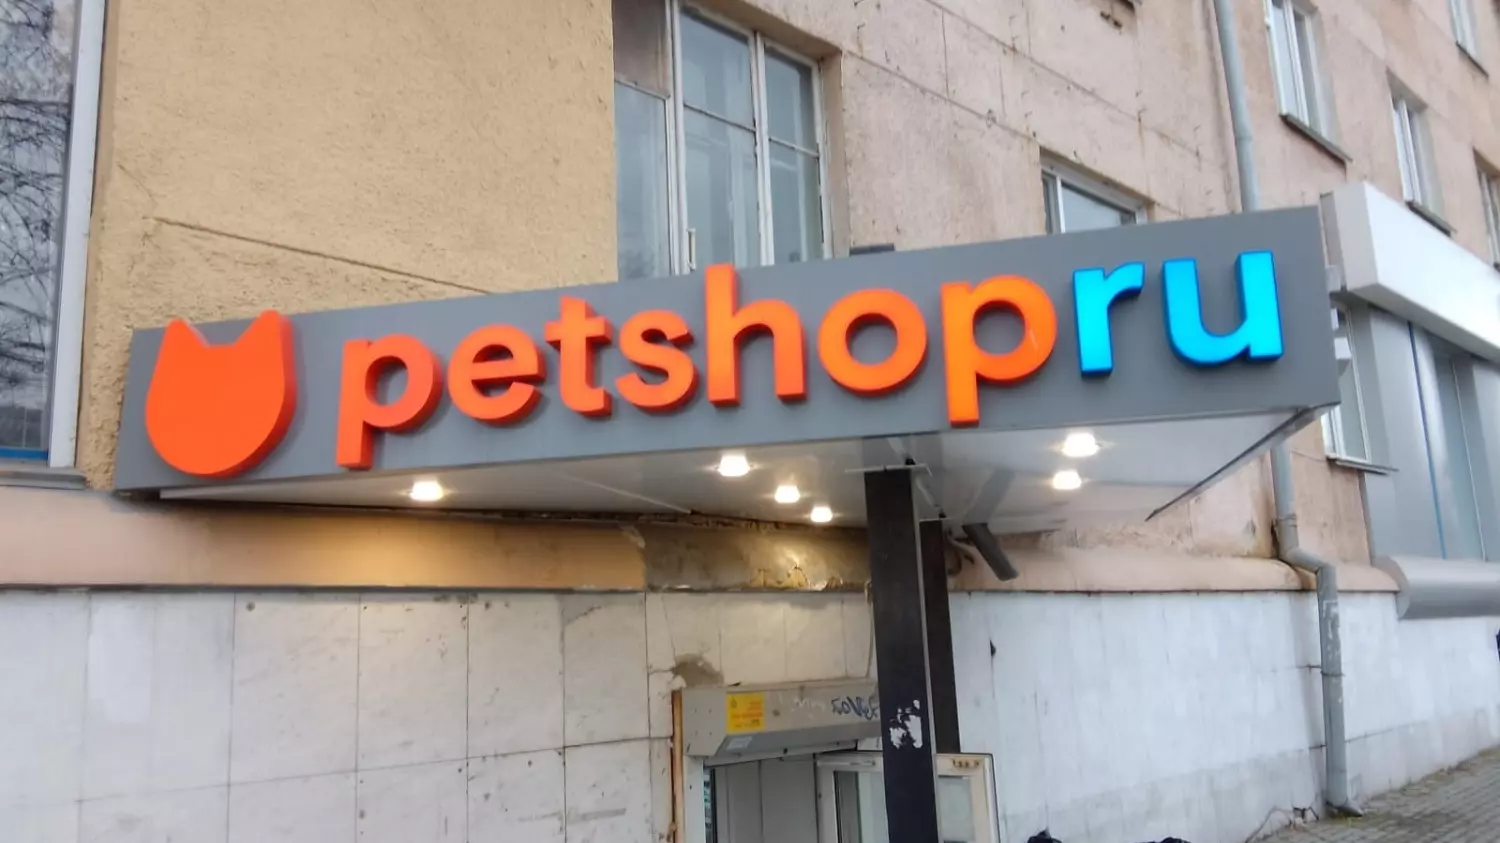 Магазины товаров для животных тоже нередко используют названия на английском языке